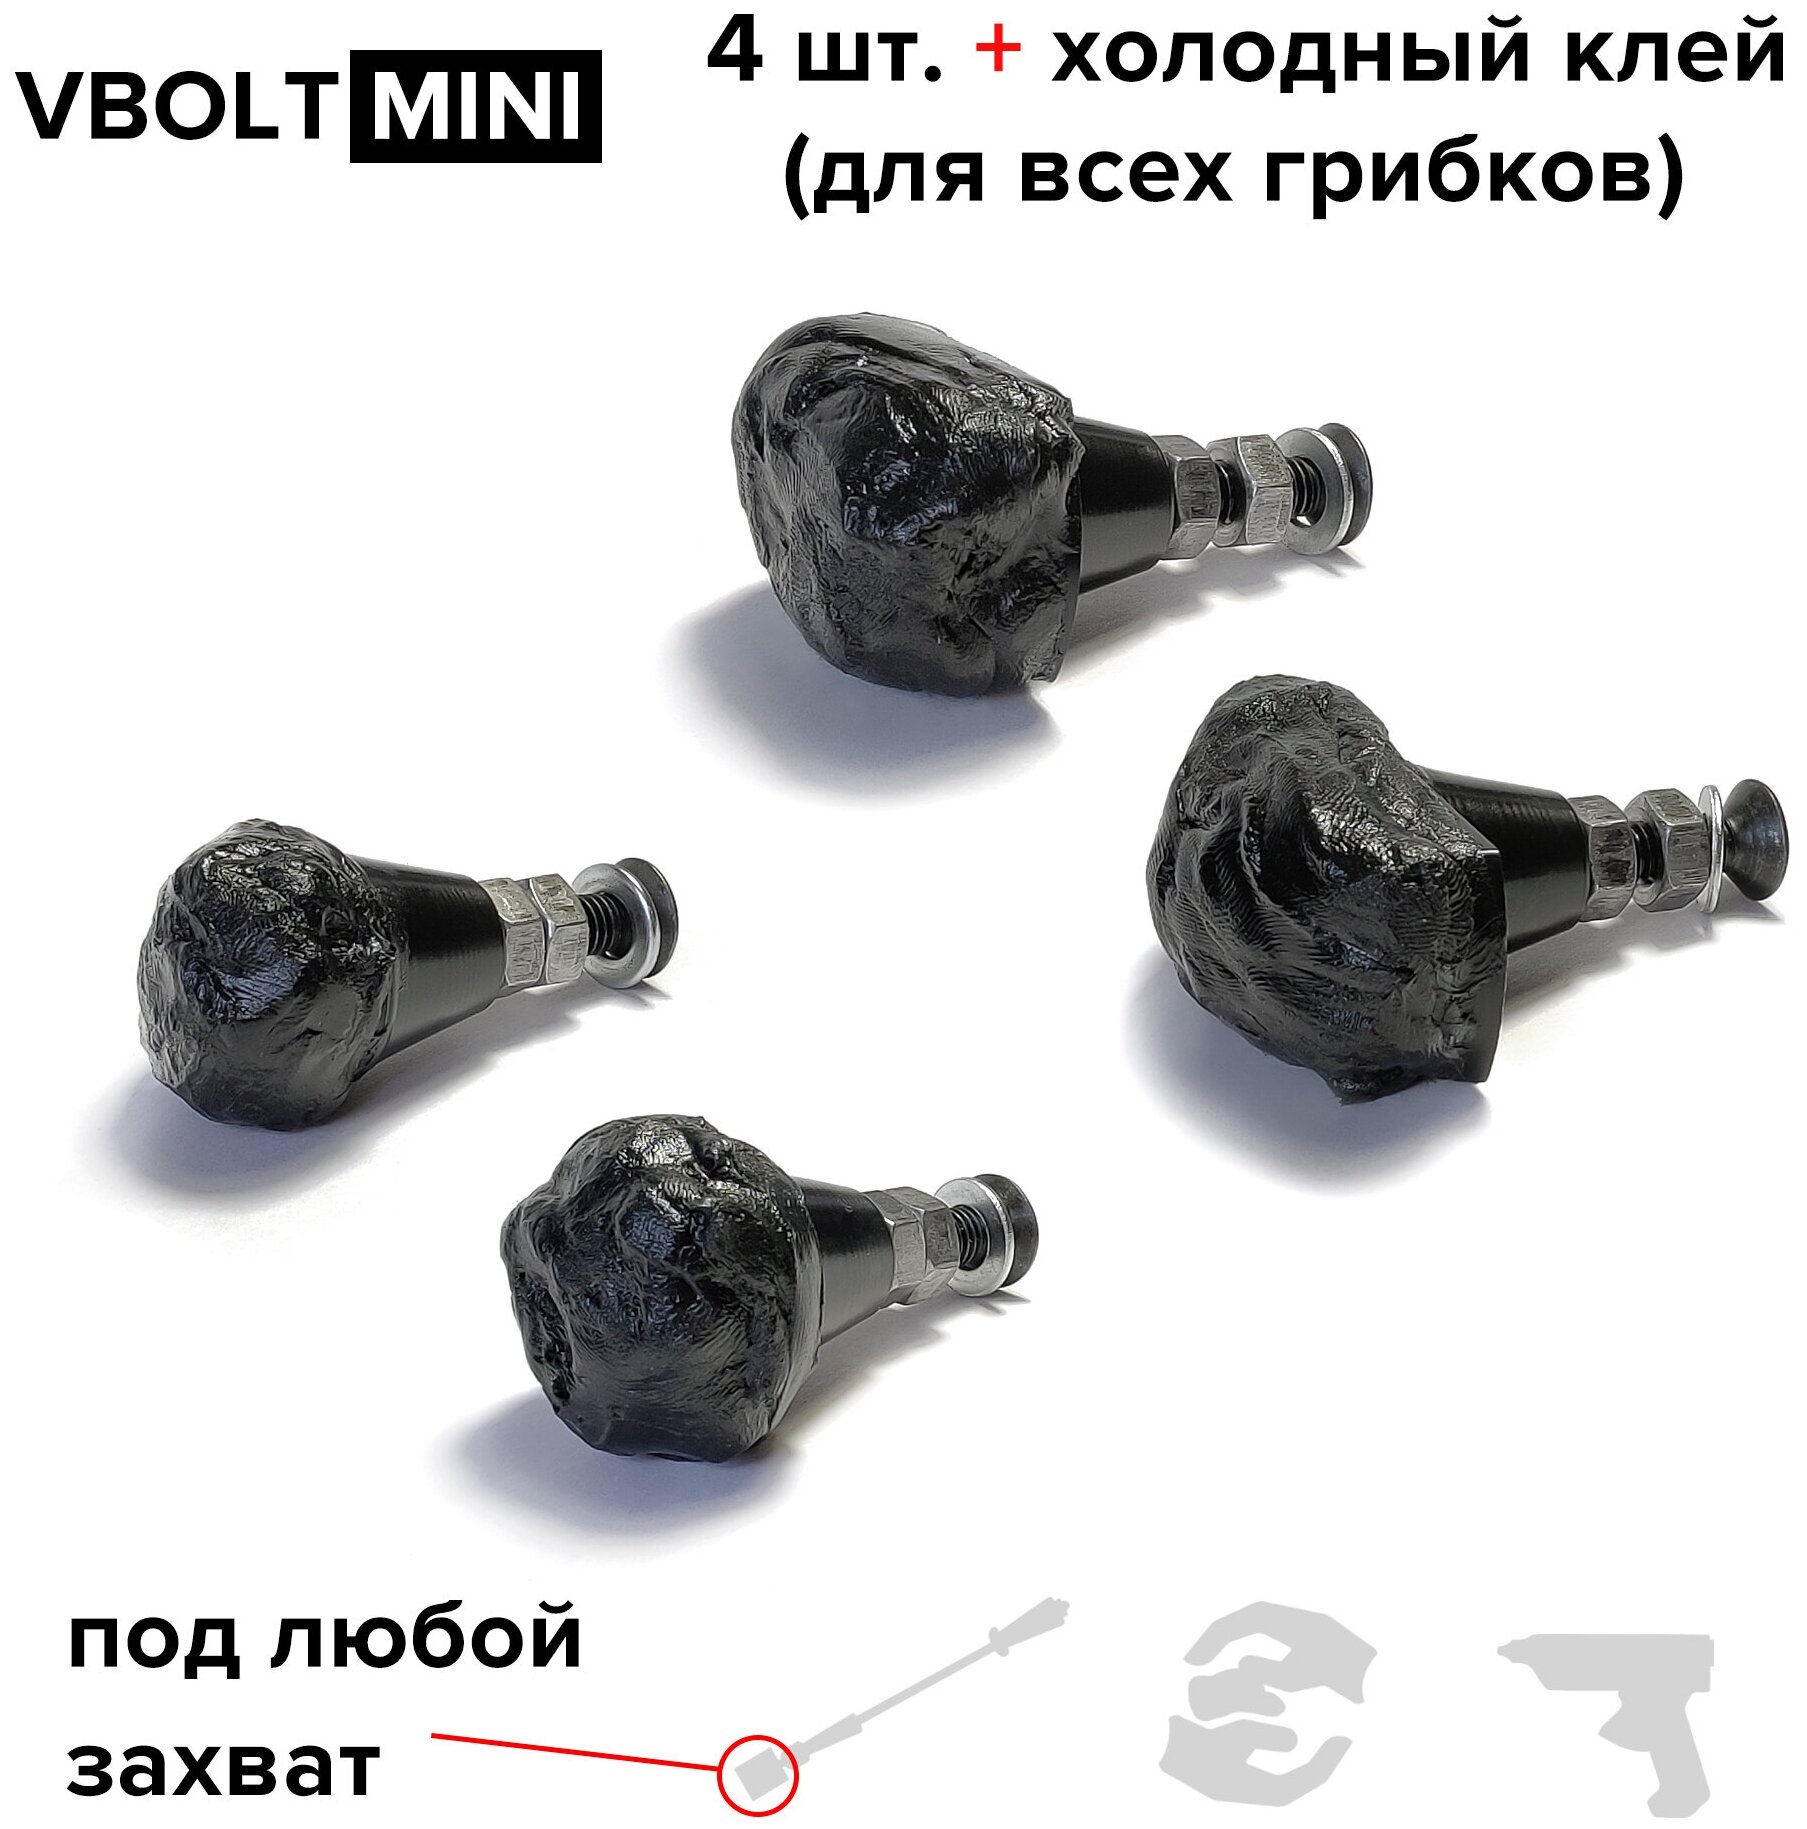 Клеевые адаптеры (грибки) Выпрямитель VBOLT MINI для удаления вмятин (PDR / DOL / БУВ), 4 шт. + холодный клей MIDIAR, 50 гр.